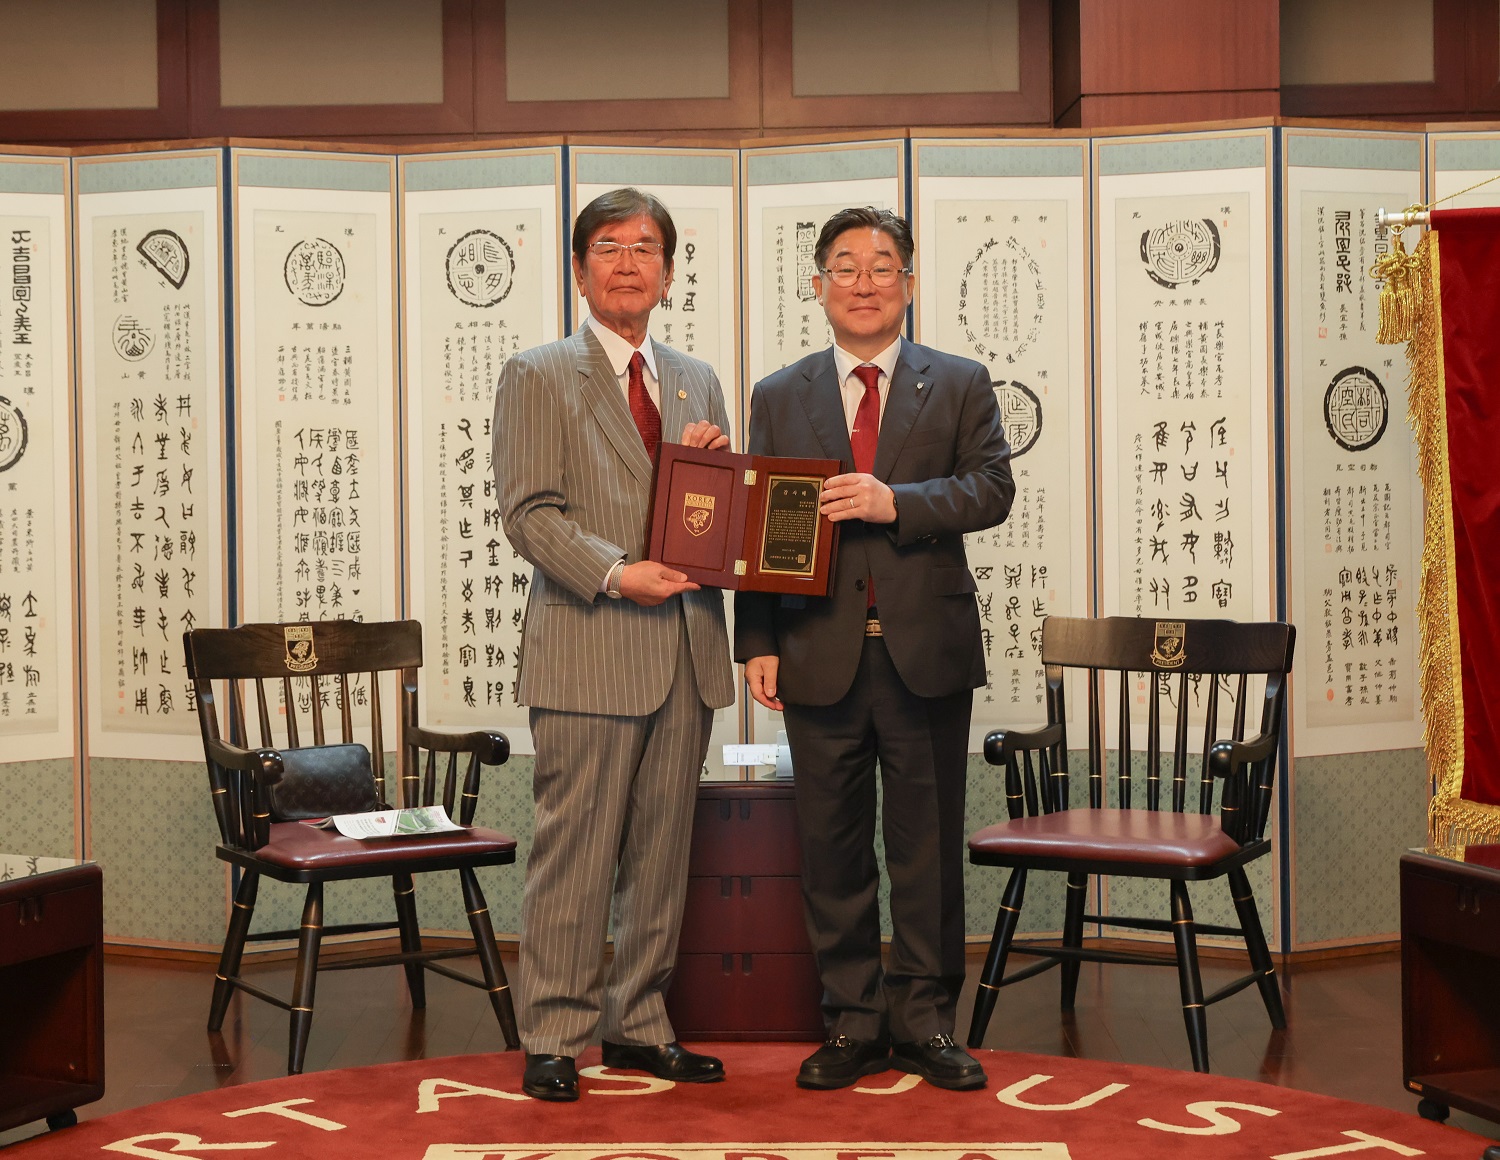 - 김동원 고려대 총장(오른쪽)과 최상영 영스틸(주) 회장이 기념 사진을 찍고 있다. 